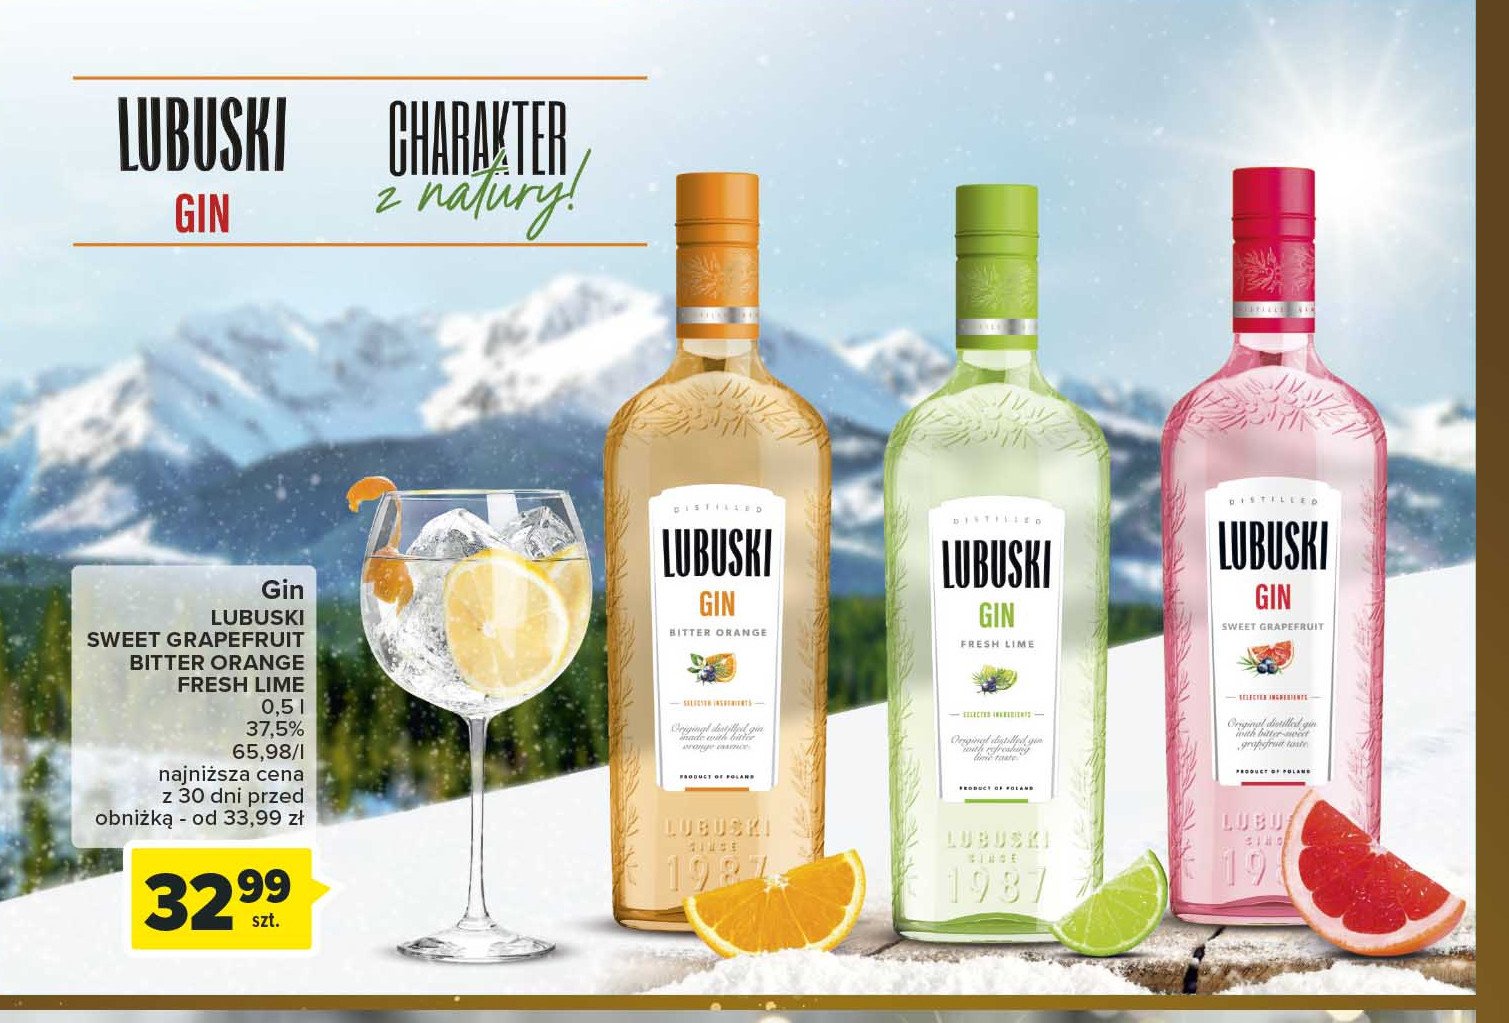 Gin Lubuski gin fresh lime promocja